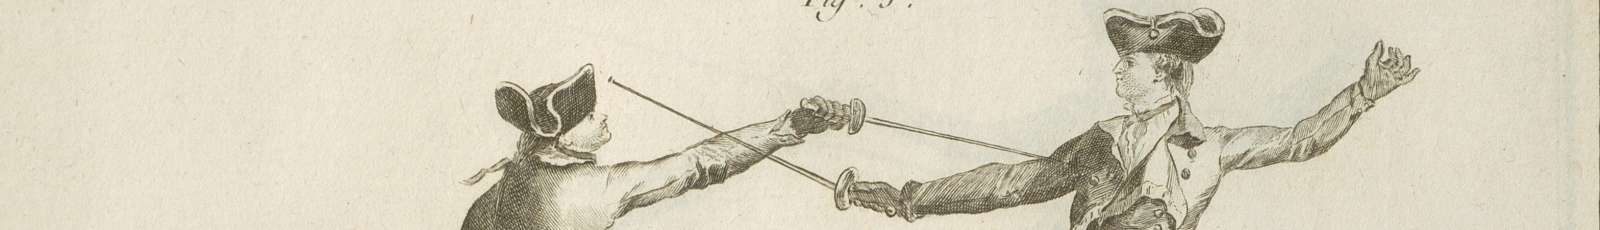 "Escrime" dans "L'Encyclopédie" par M. Diderot et D'Alembert. Bib. Mazarine, 2° 3442-25 pl.2 (extrait)